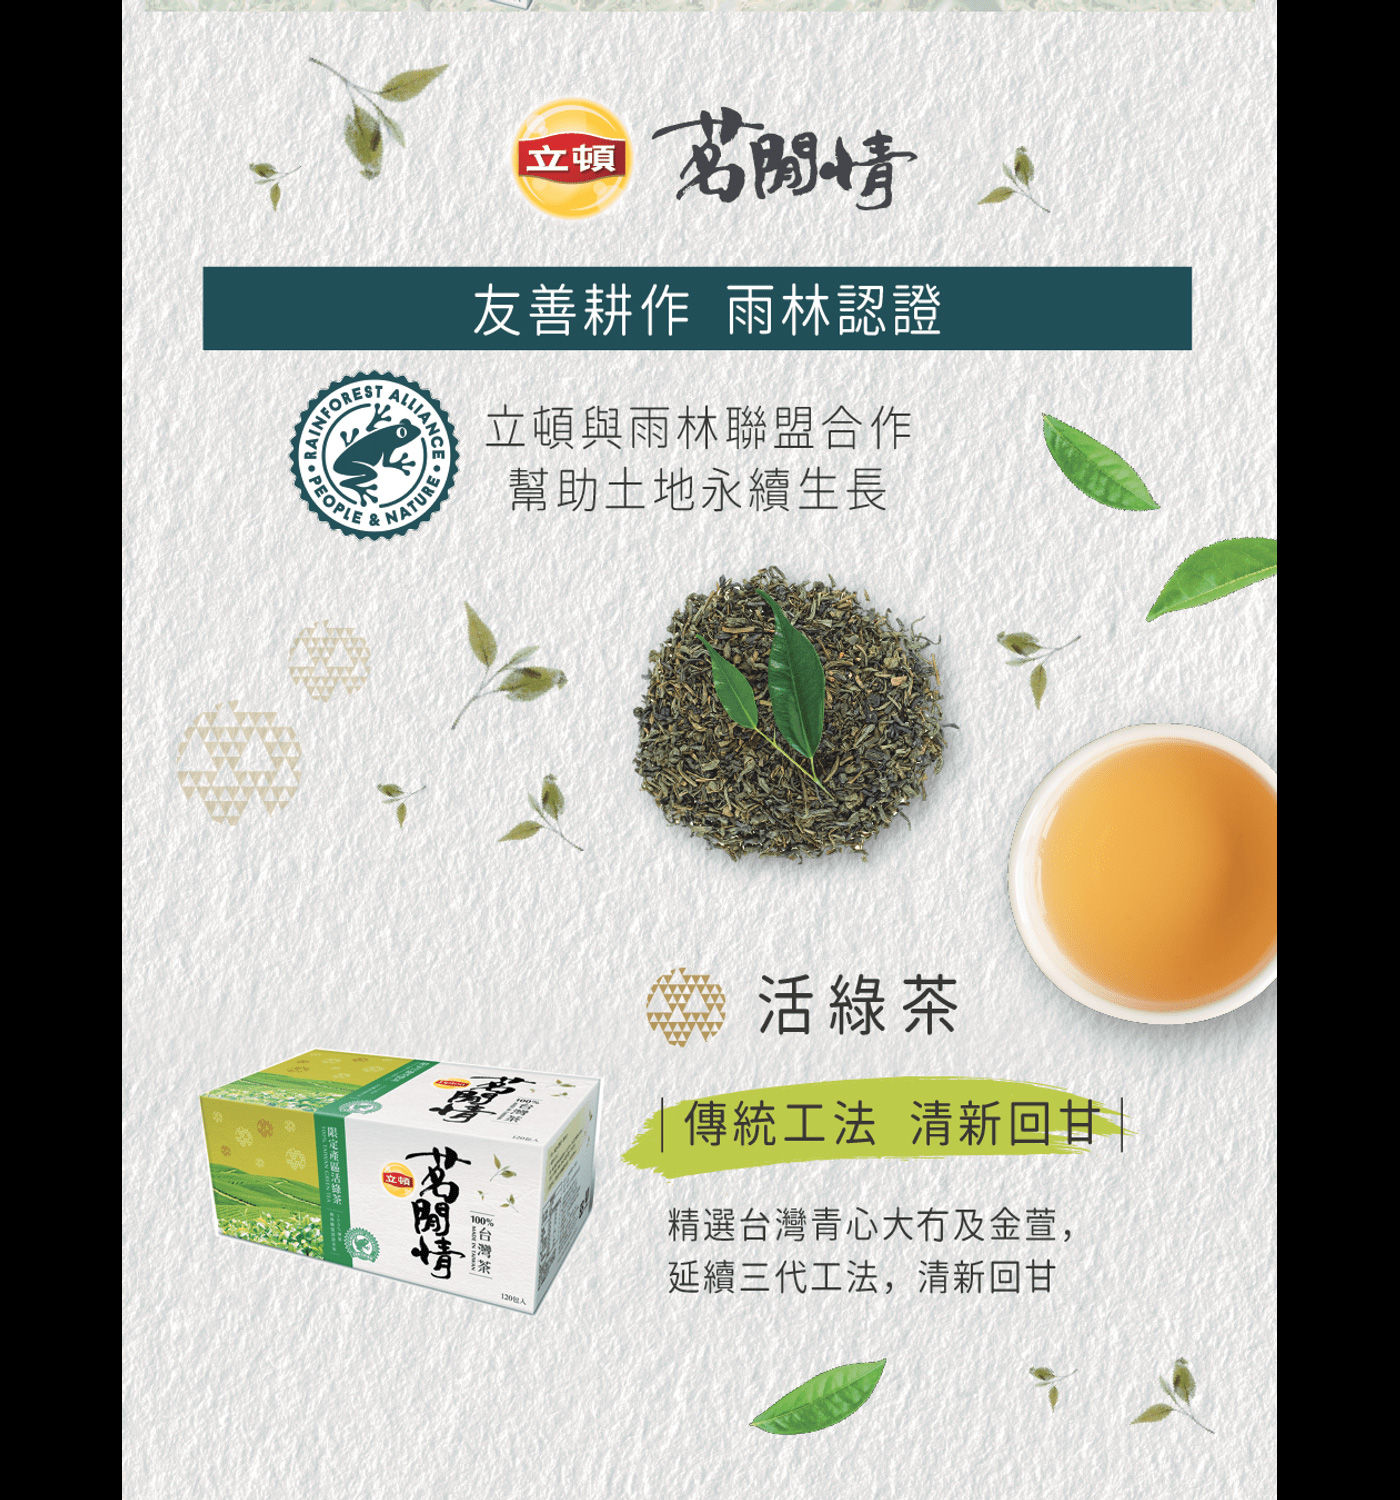 立頓 茗閒情台灣綠茶茶包 友善耕作 雨林認證 使用傳統工法 清新回甘